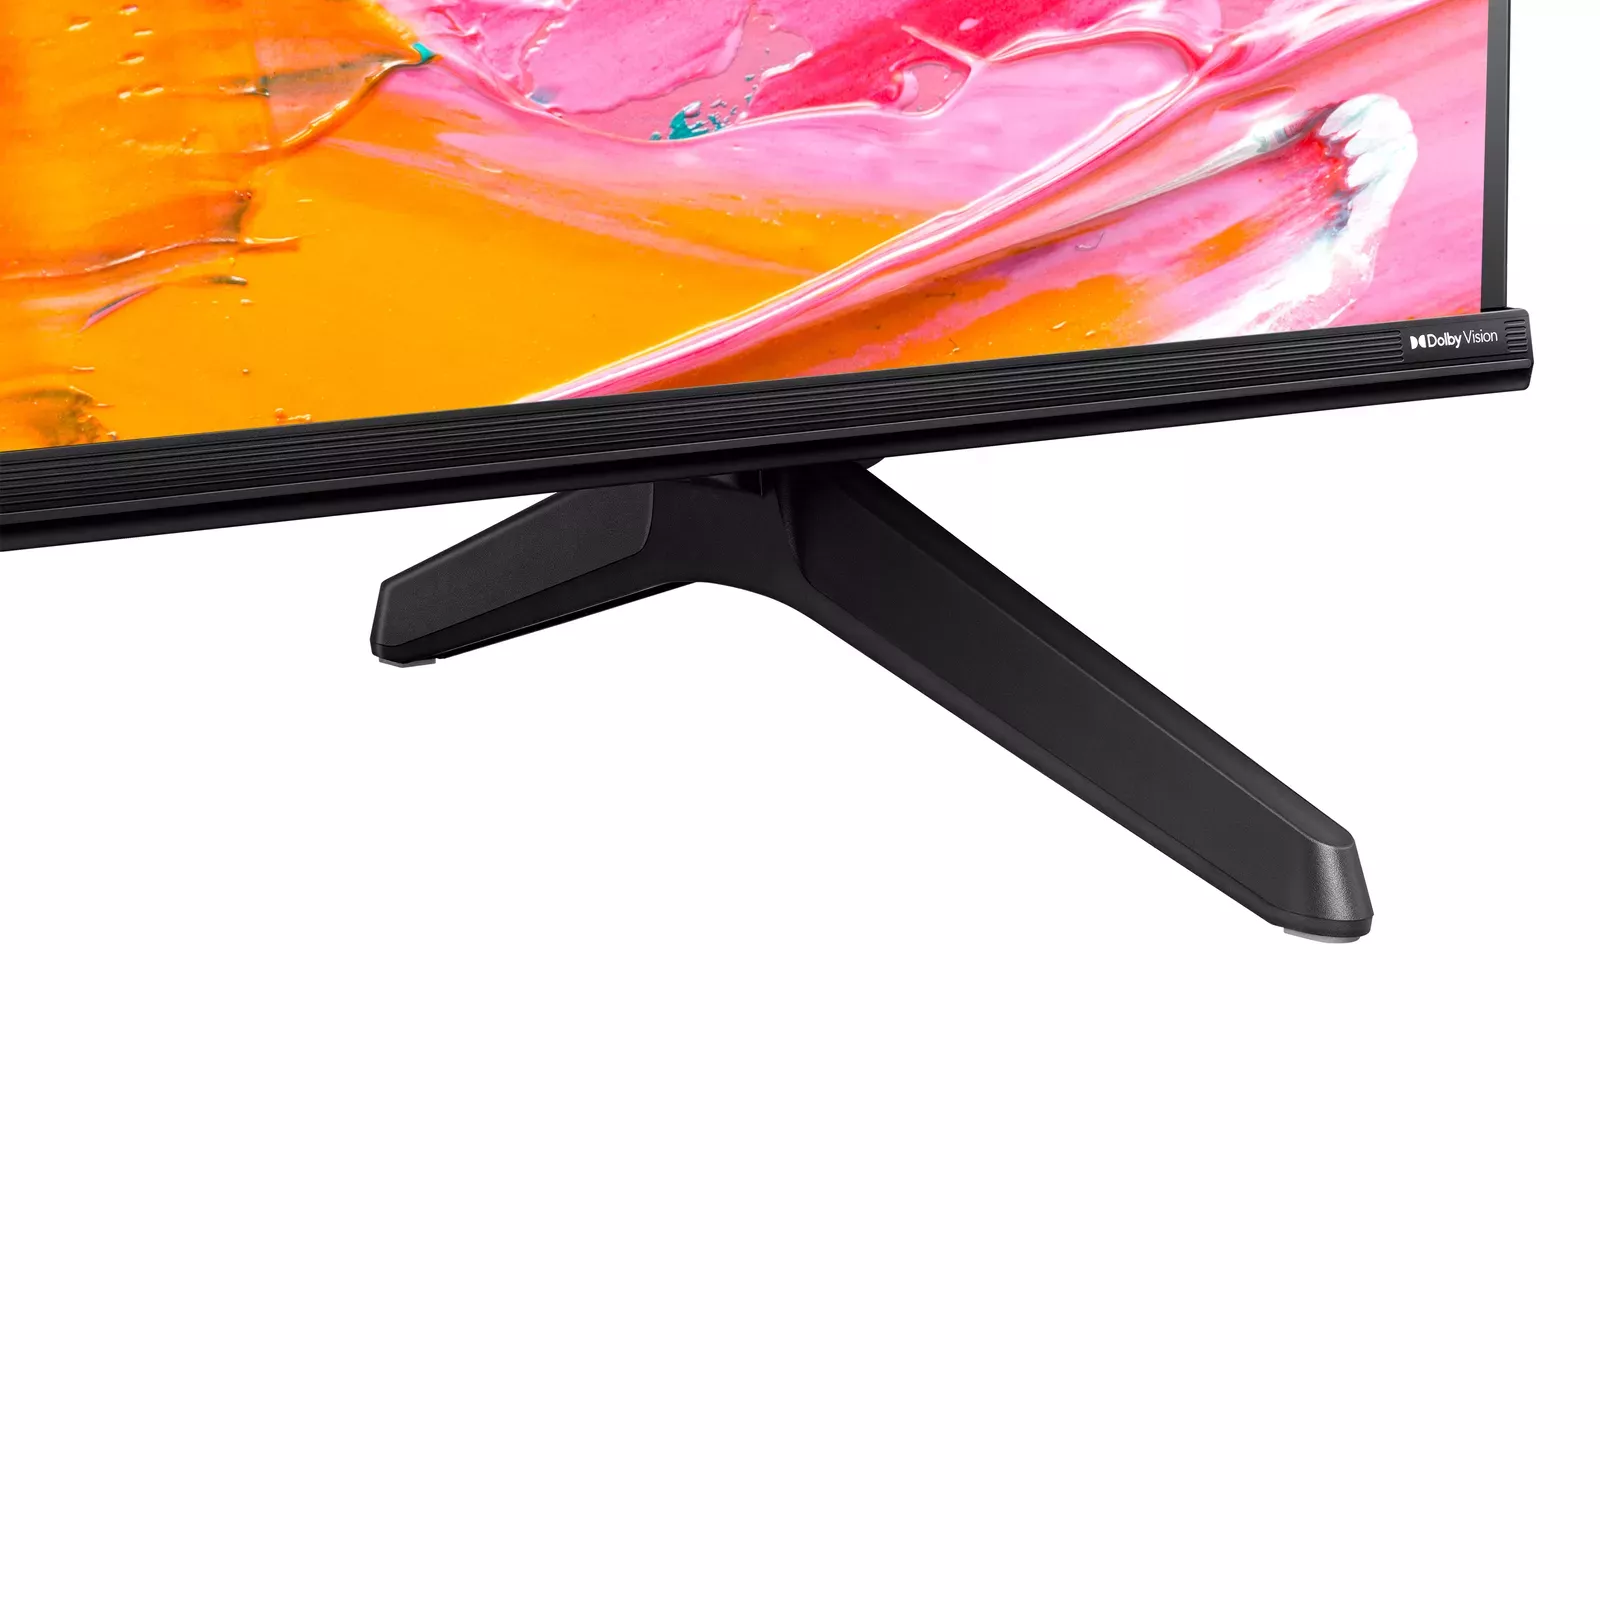 Hisense 55A6K 139 cm (55 inches) 4K UHD Google LED TV (Black